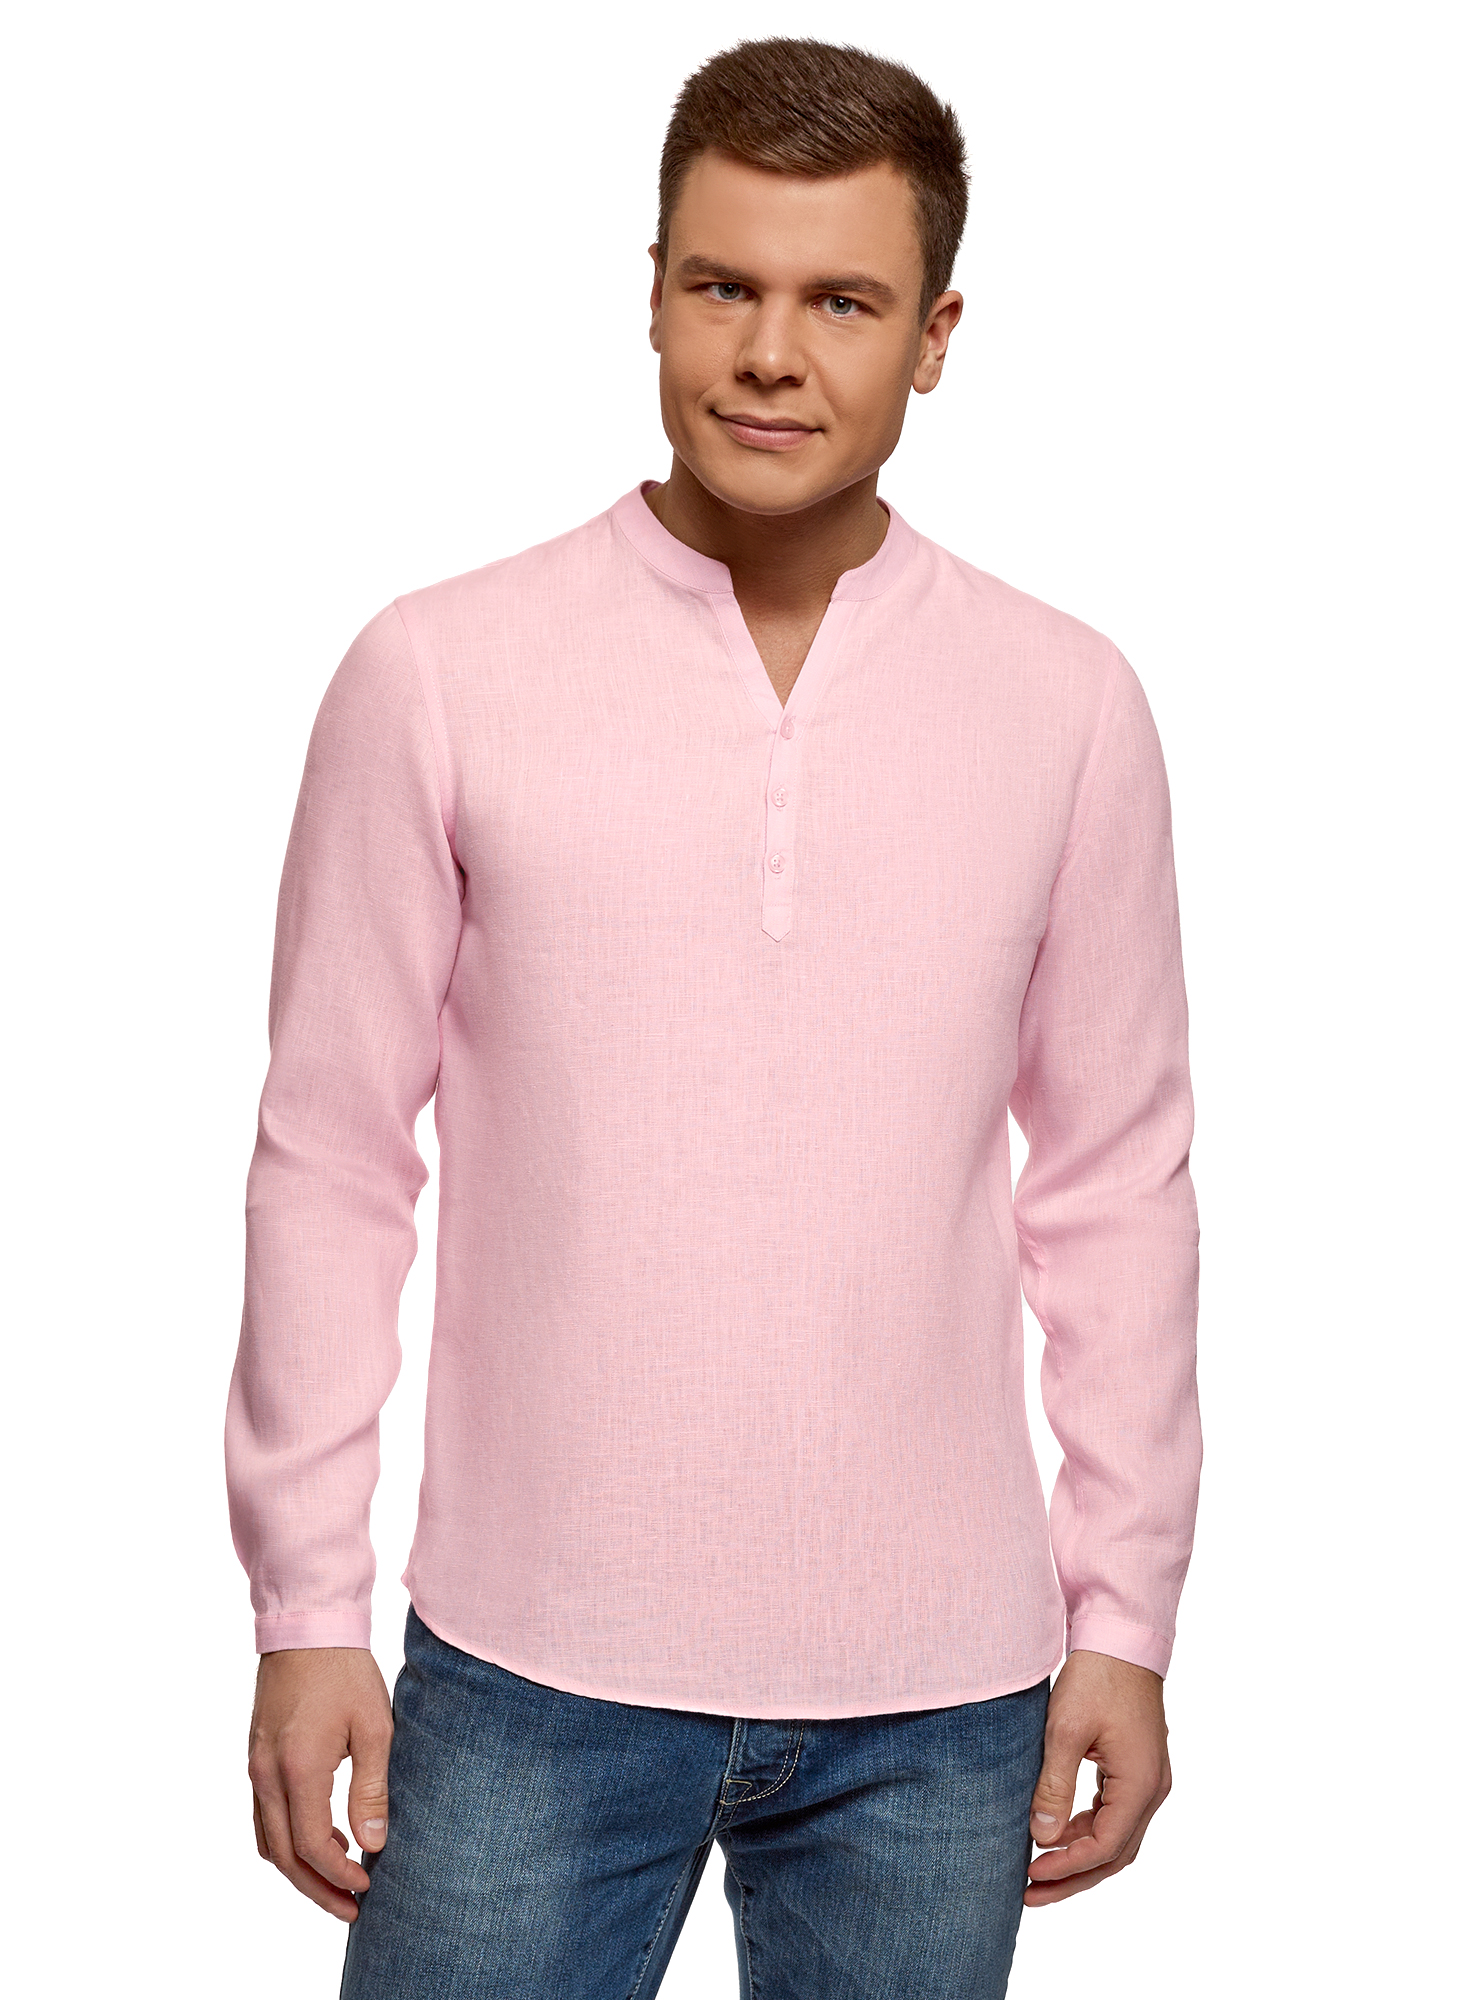 Рубашка мужская oodji 3B320002M розовая L